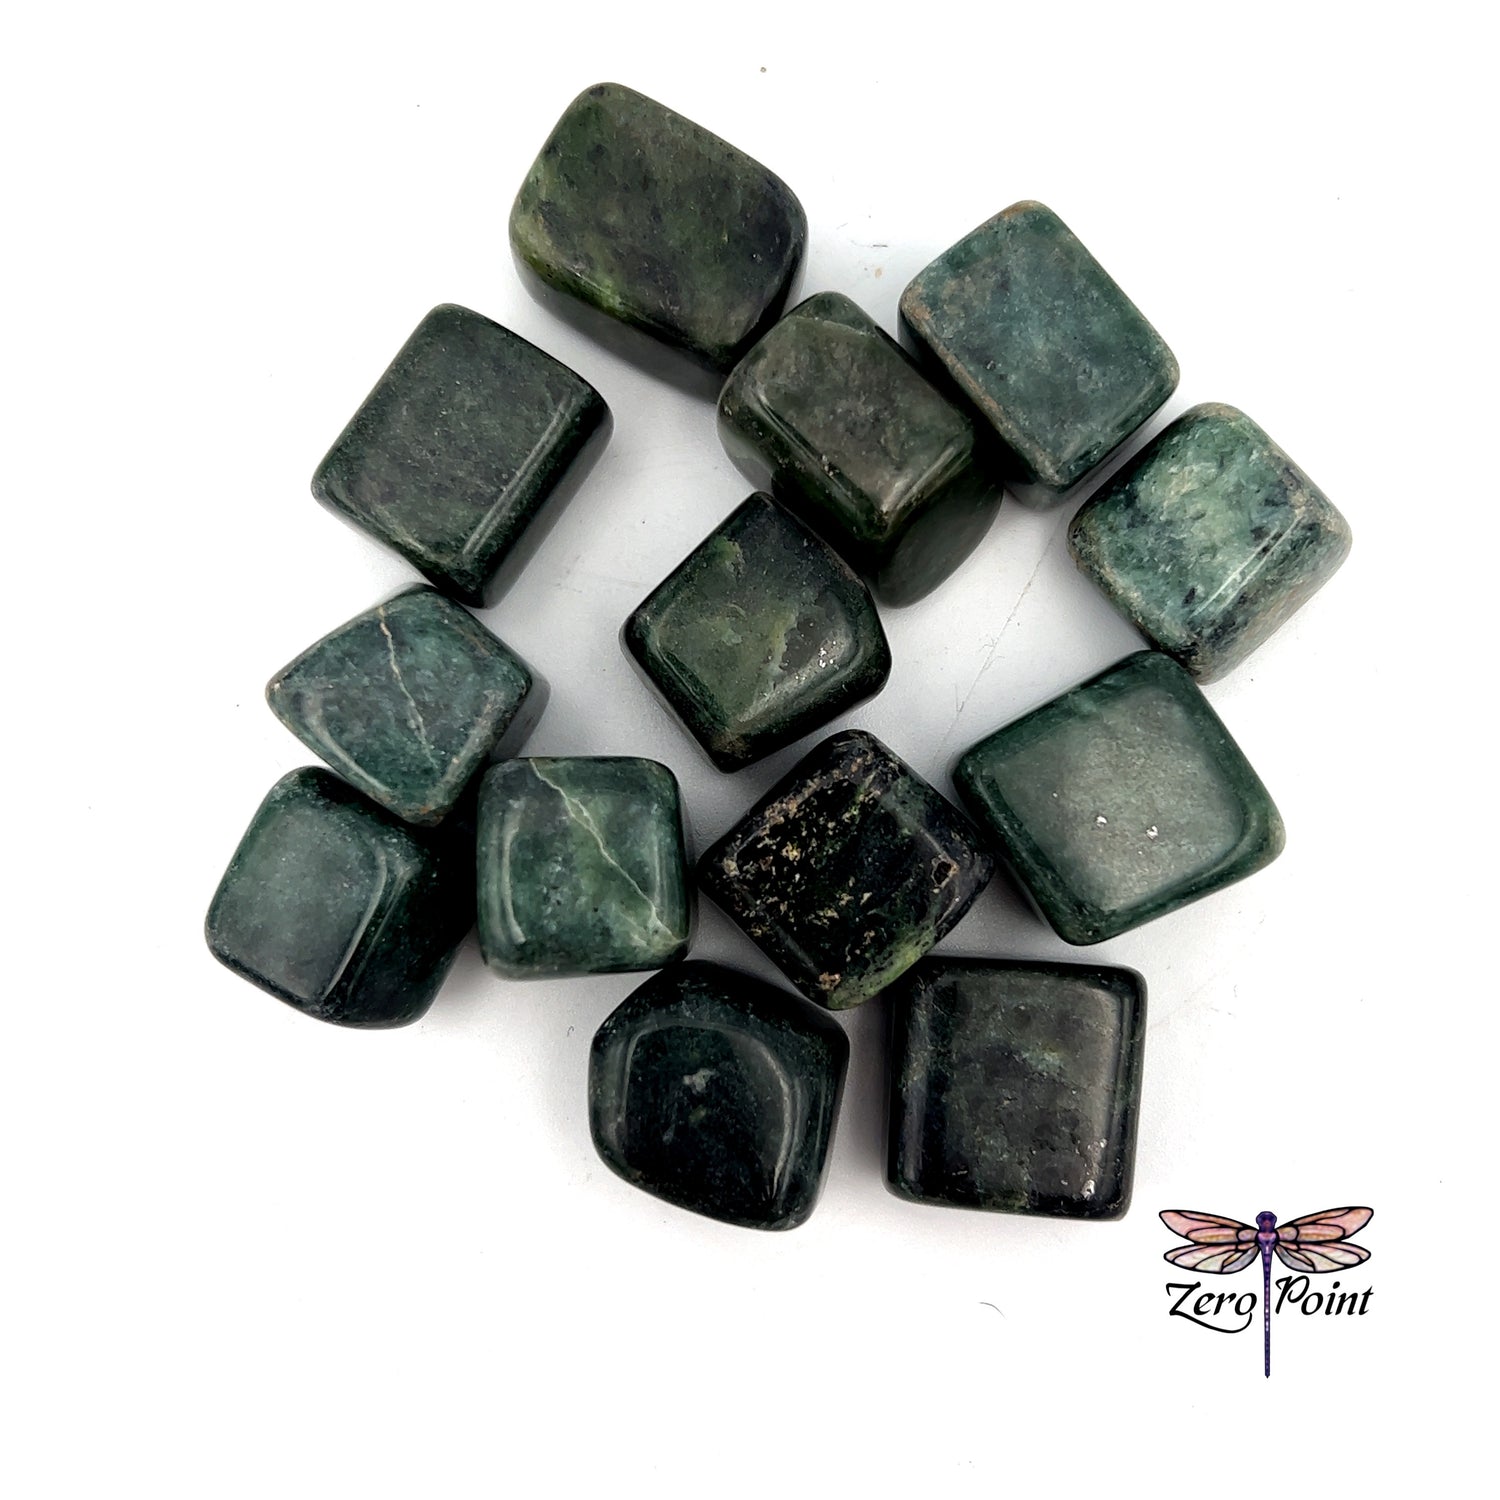 Tumbled Jade - Zero Point Crystals